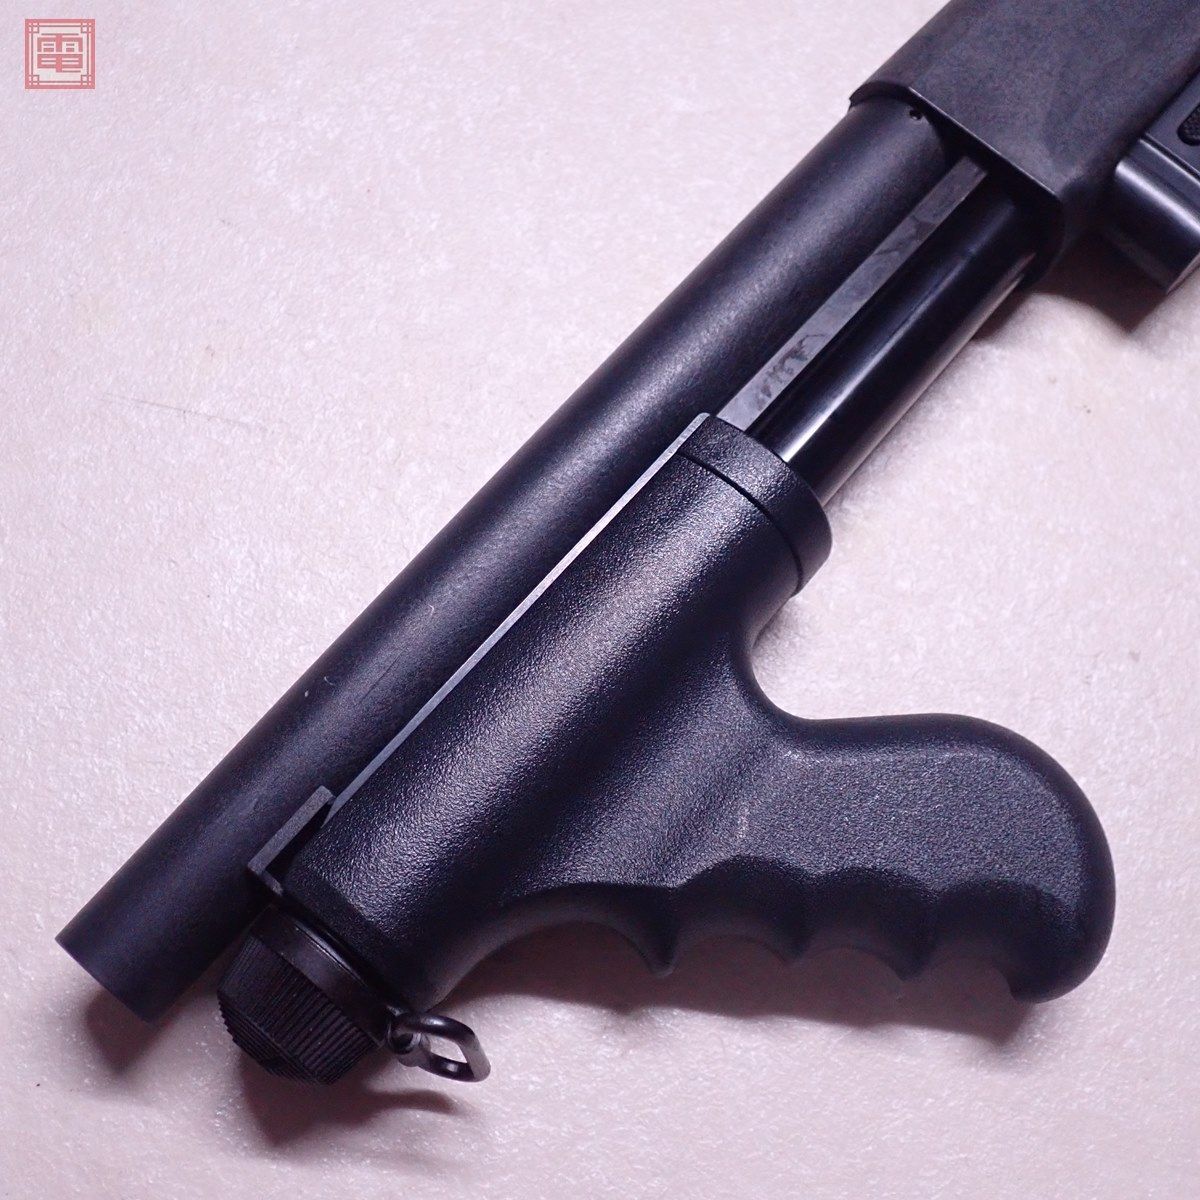  Maruzen air kokiCA870brudok pump action Schott gun spare magazine attaching present condition goods [40